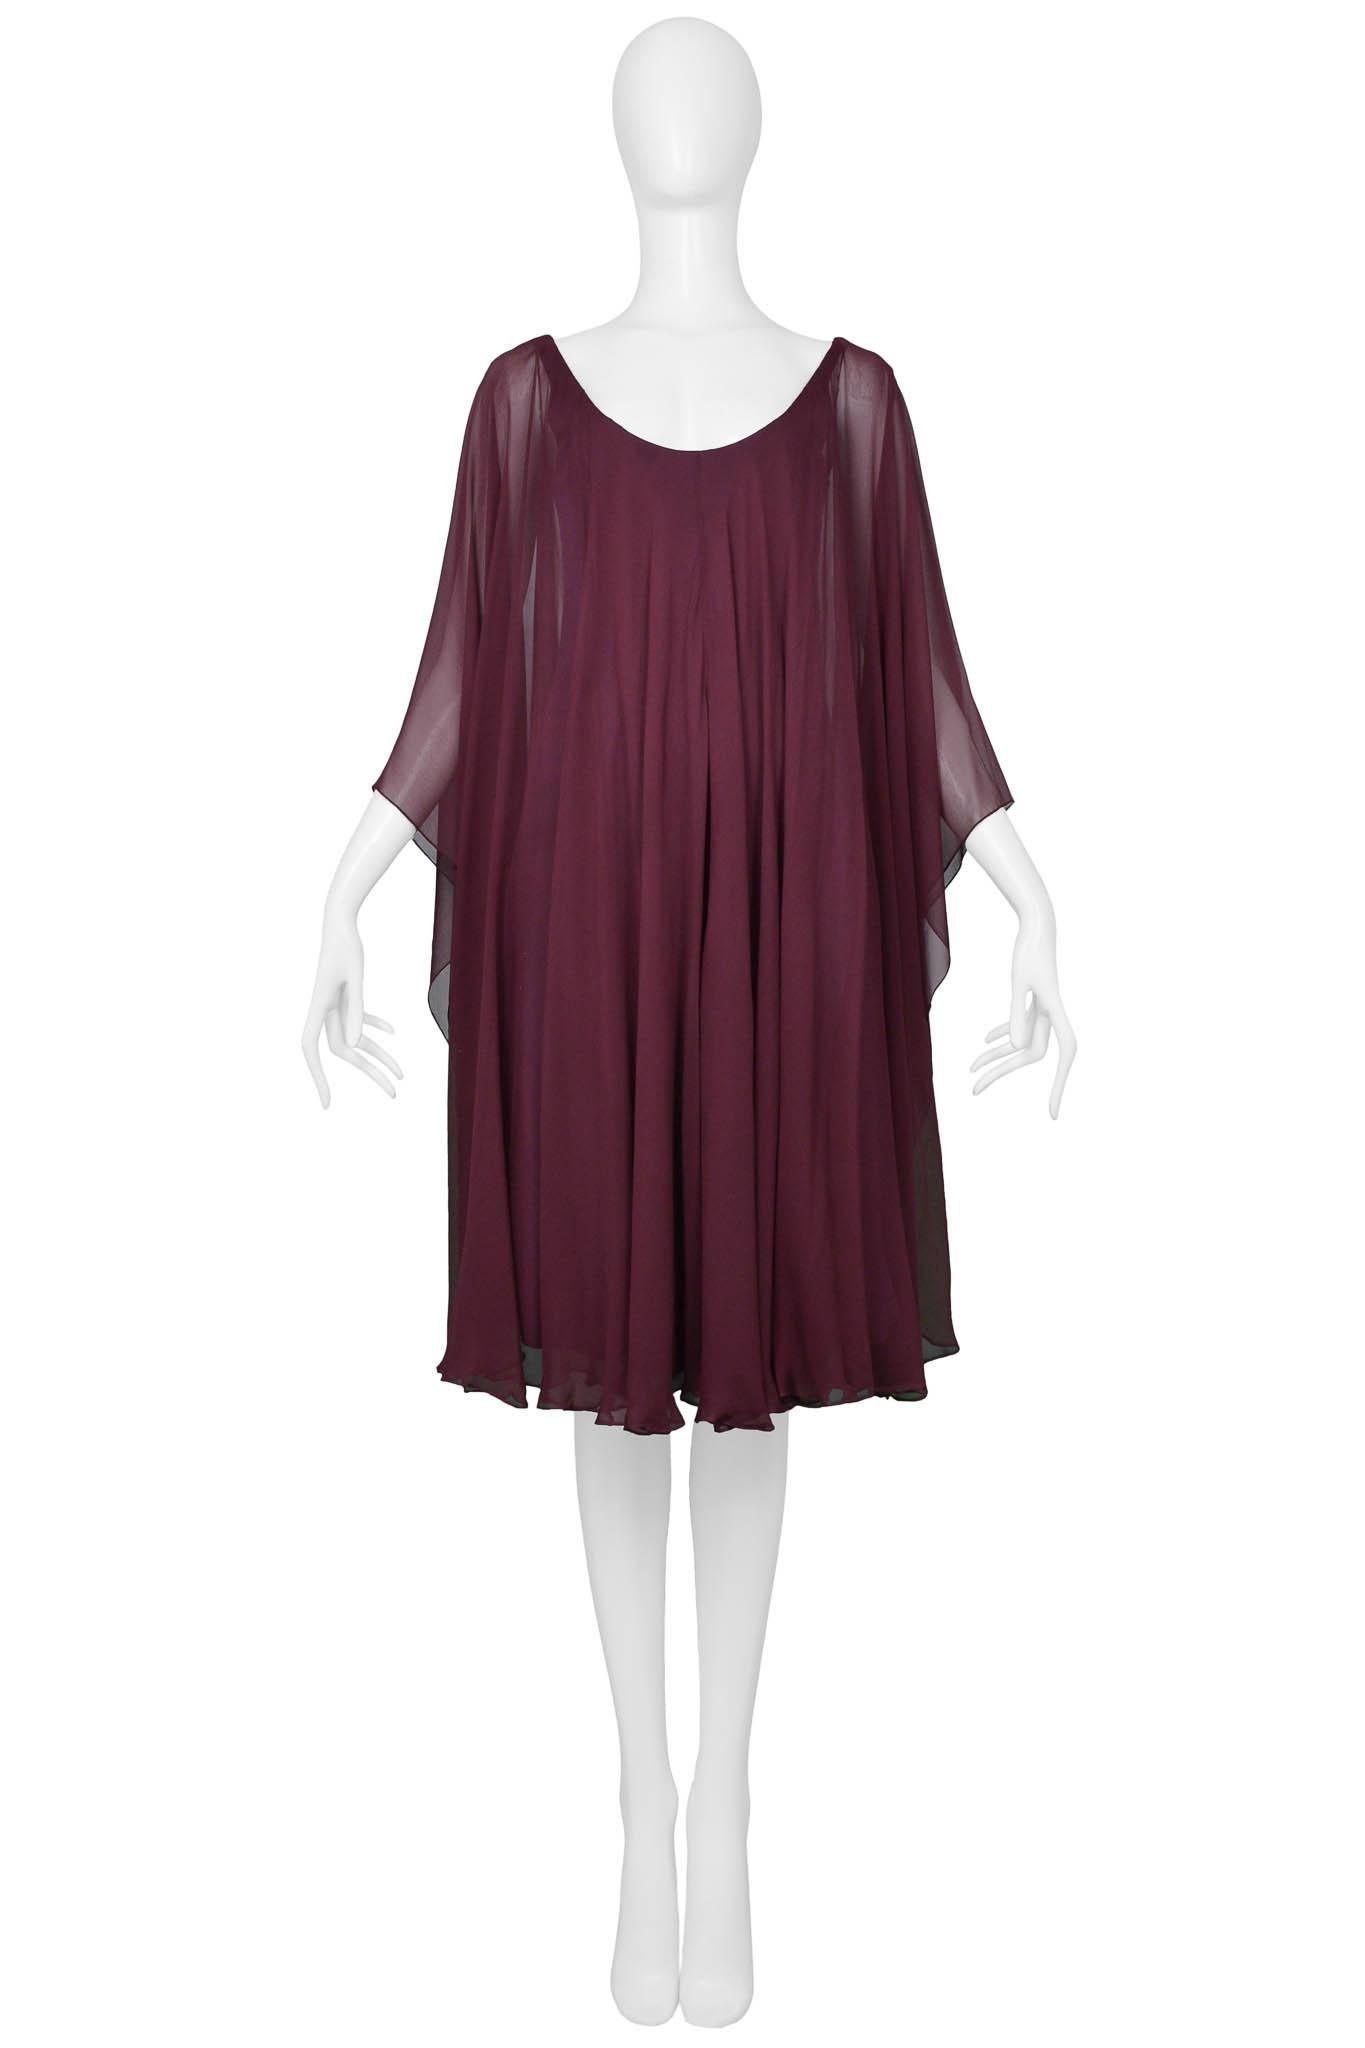 Resurrection Vintage a le plaisir de vous proposer une robe vintage Halston avec une superposition de mousseline fluide, un ourlet au genou, une sous-couche ajustée et une encolure échancrée. 

Halston
Taille petite
Polyester, mousseline
Excellent